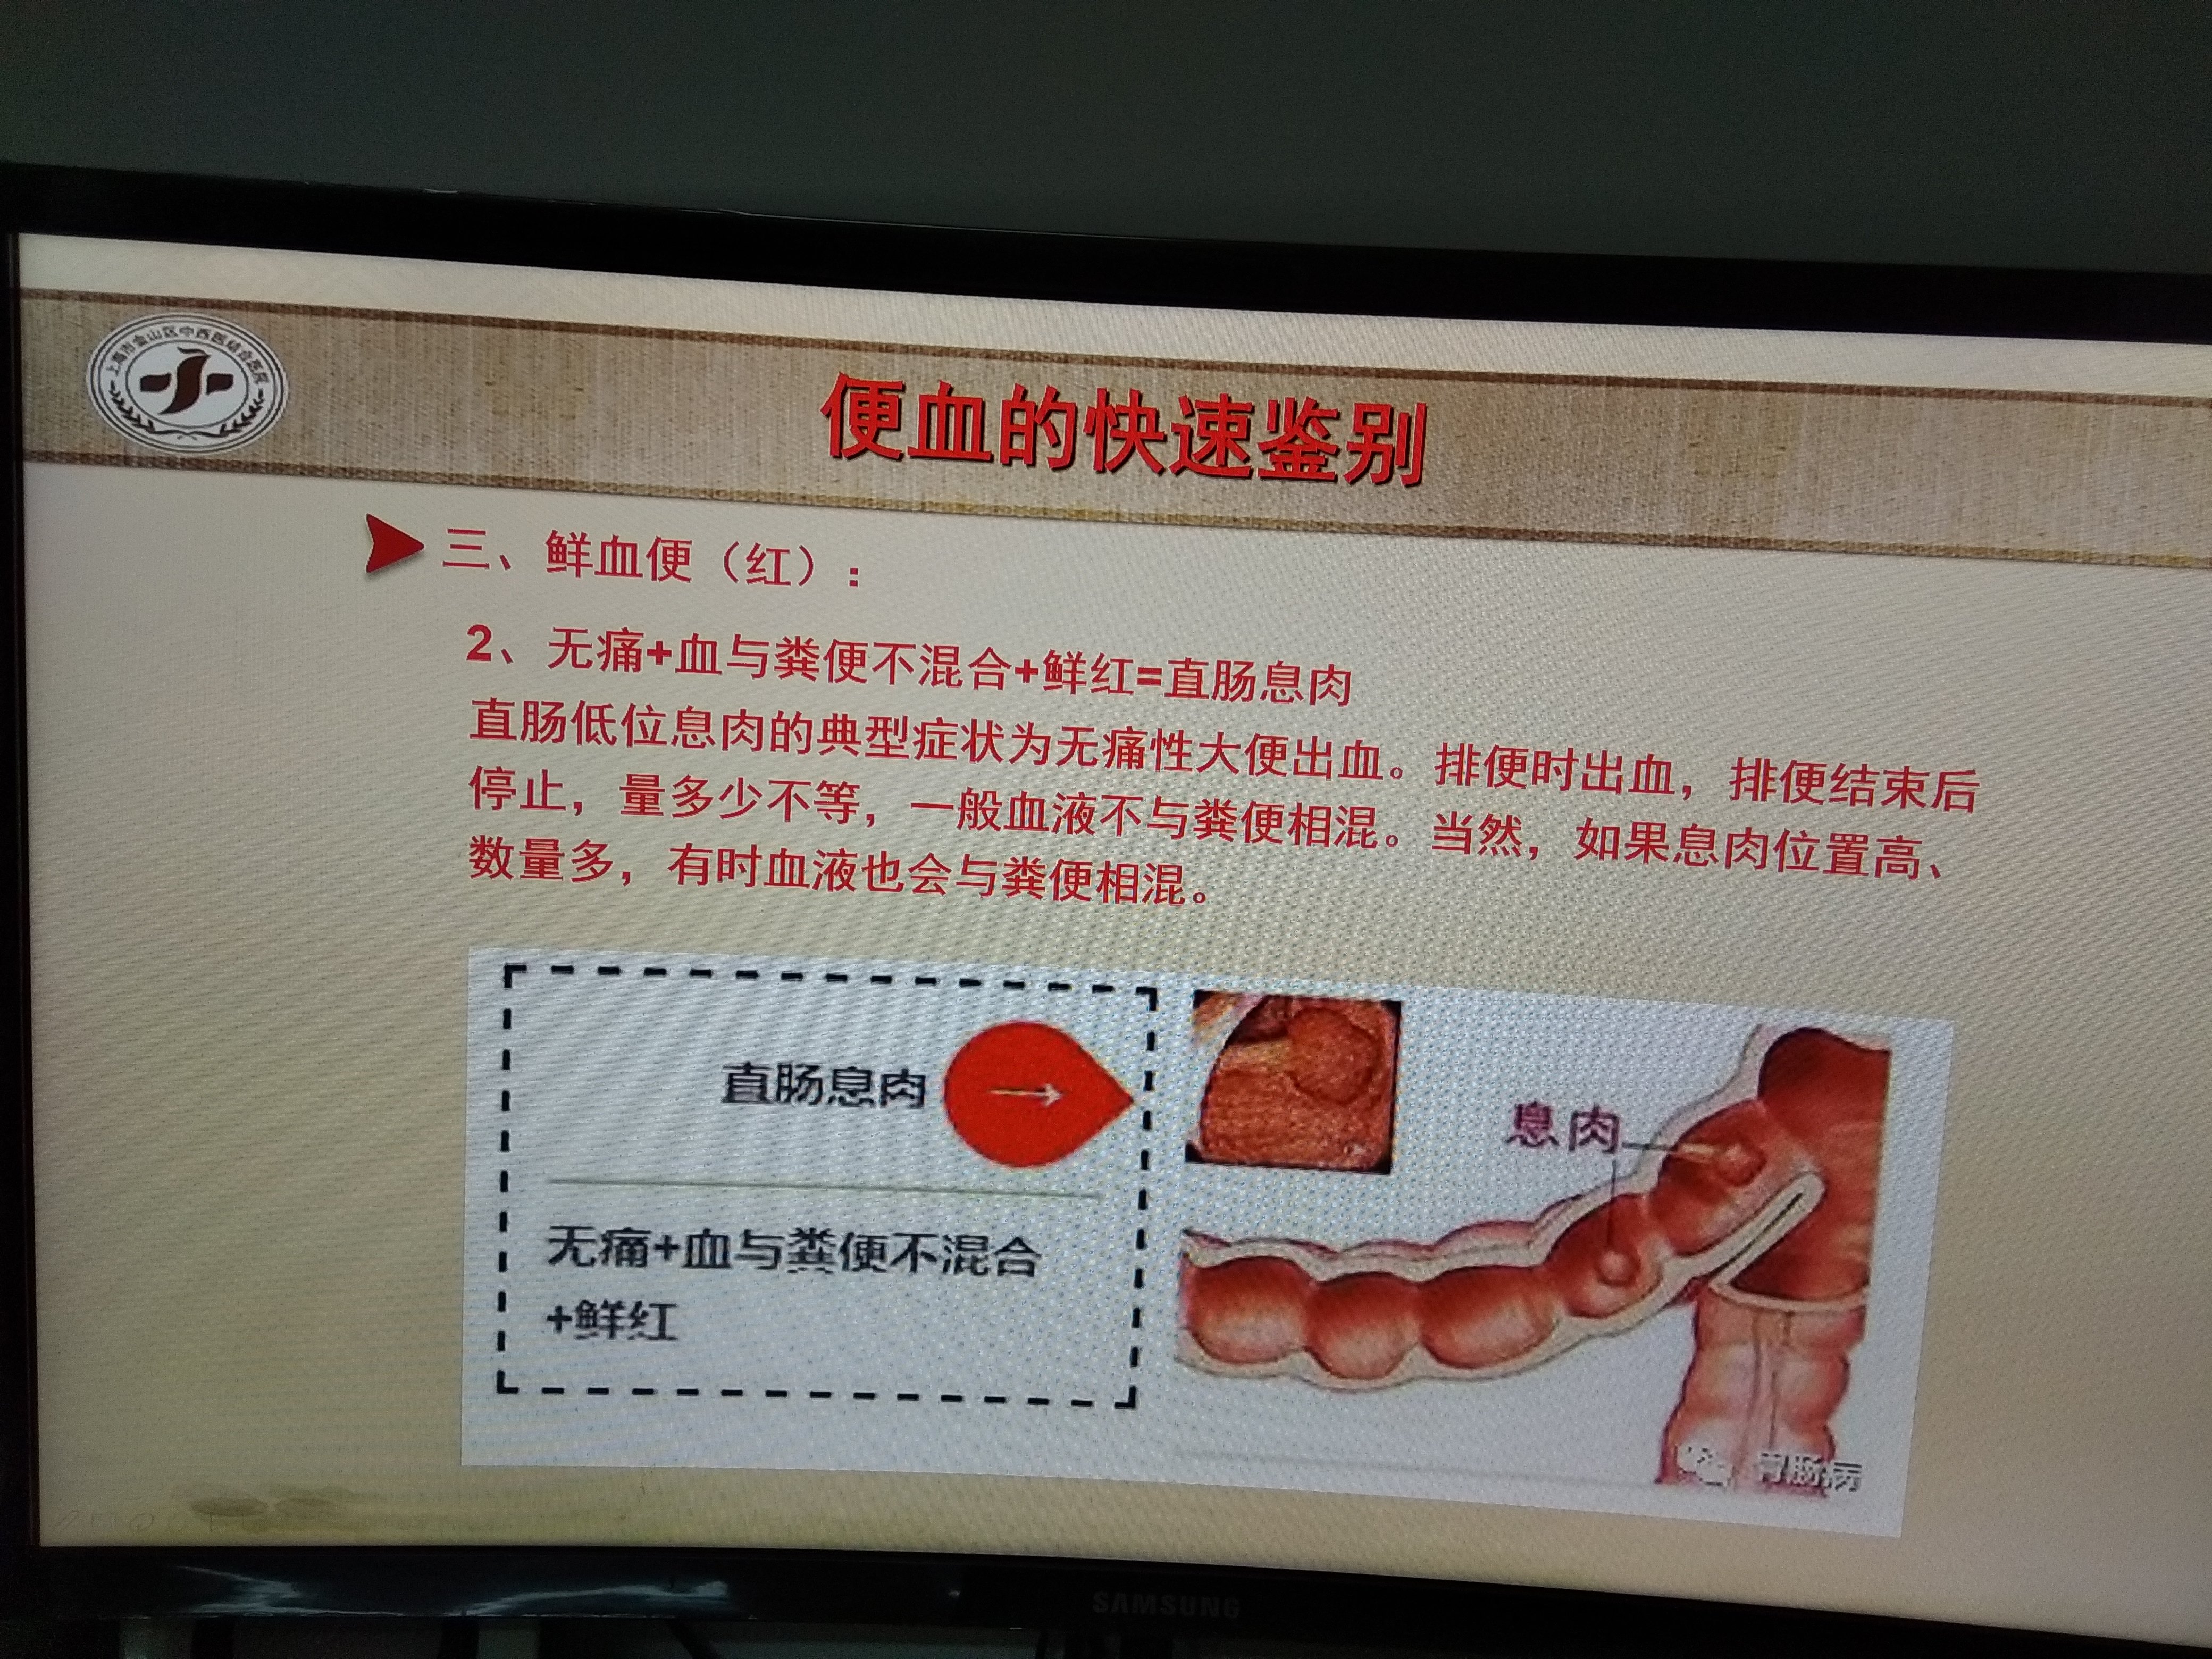 直肠息肉引起的便血特点(建议肠镜检查排除其他疾病)